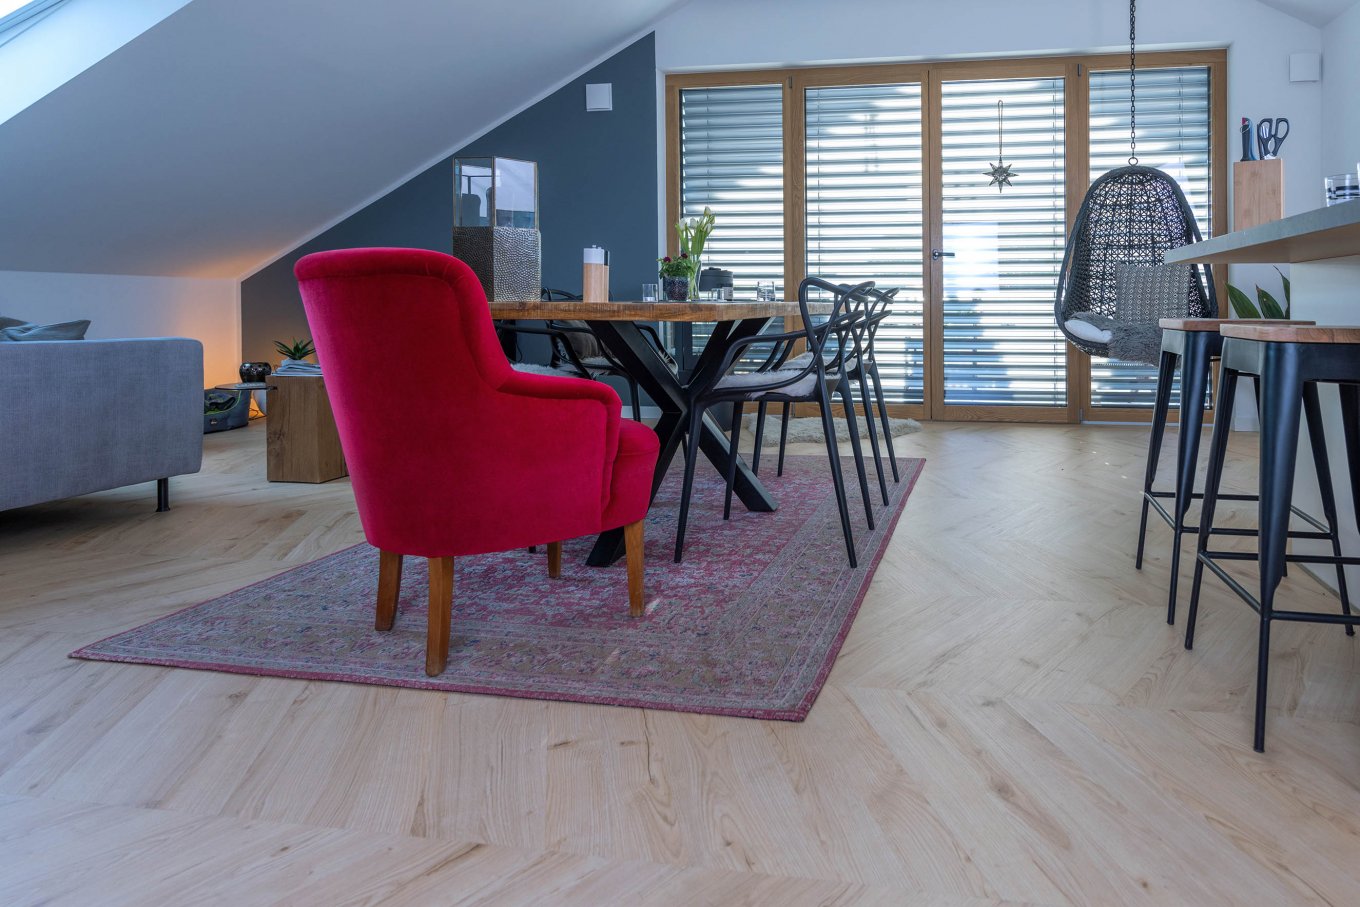 wineo PURLINE Bioboden im Esszimmer Fußboden Holzoptik Fischgrätmuster Bodenbelag Esstisch Stühle moderne Einrichtung